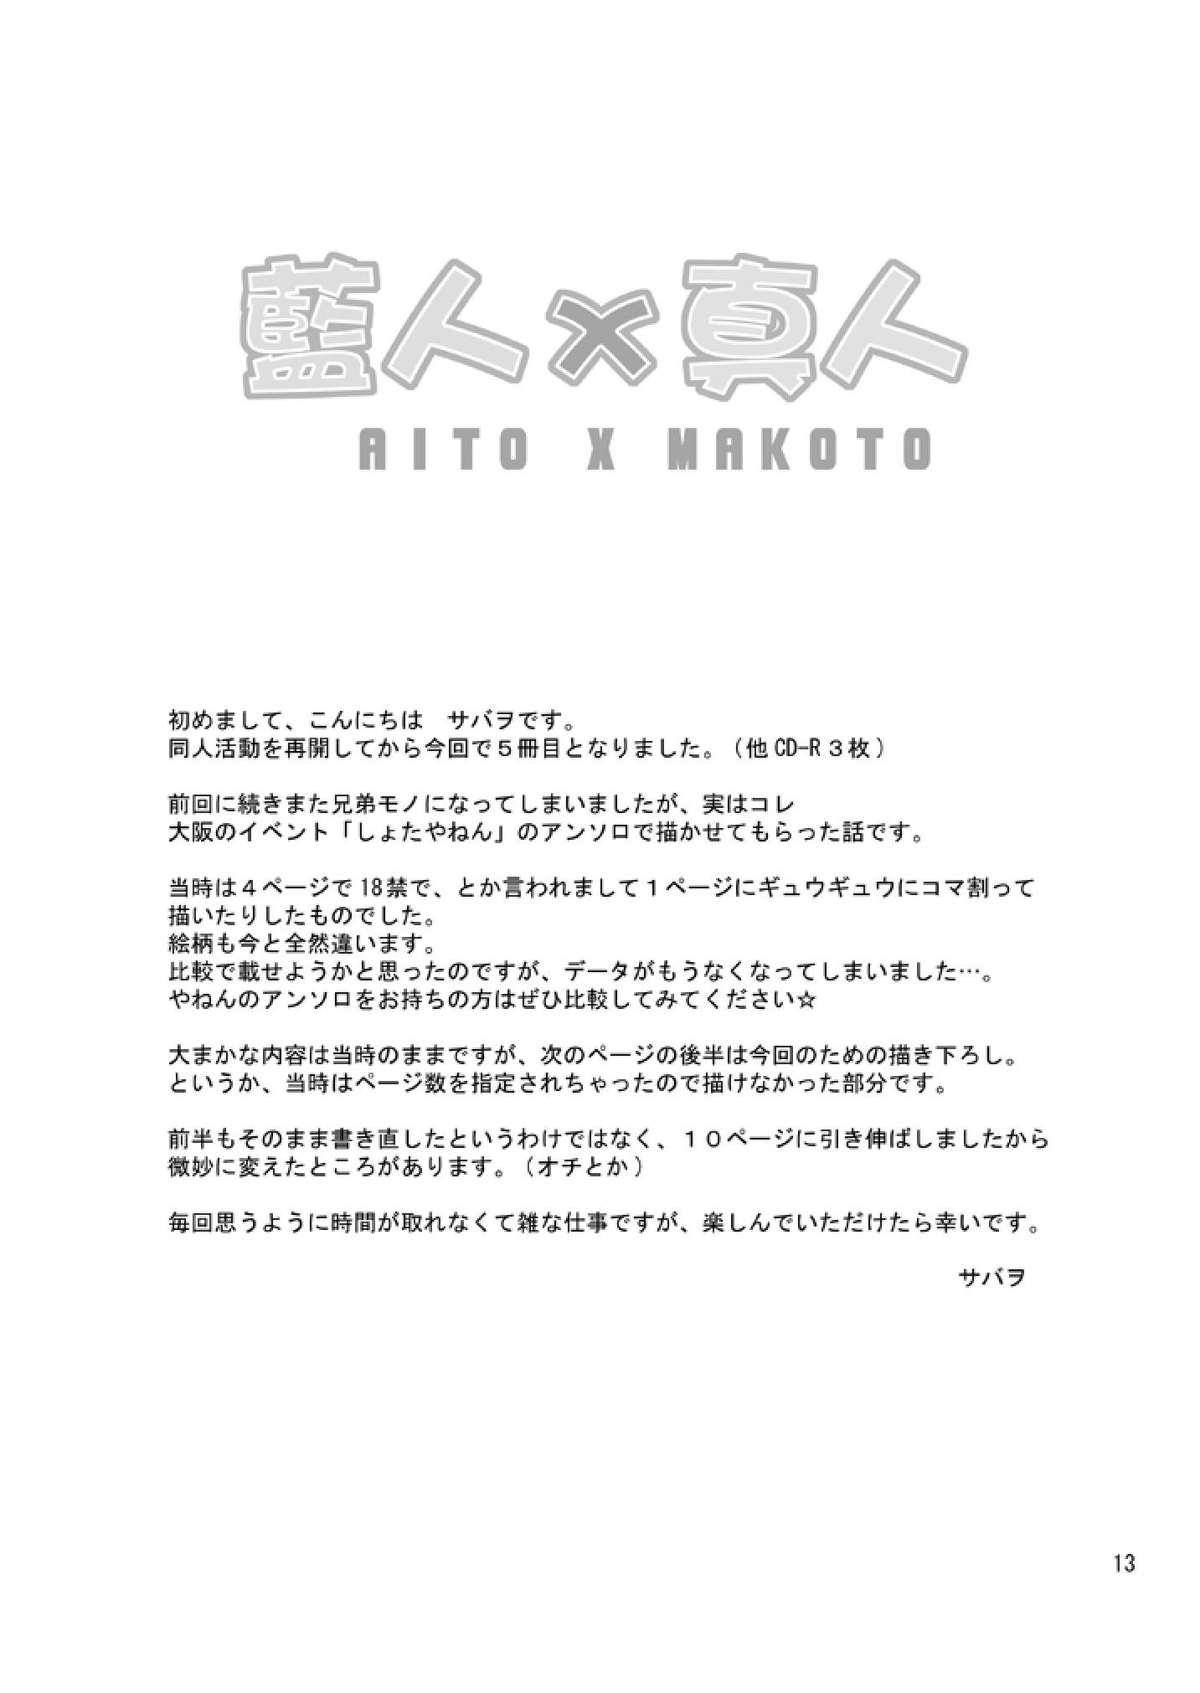 Aito x Makoto 11